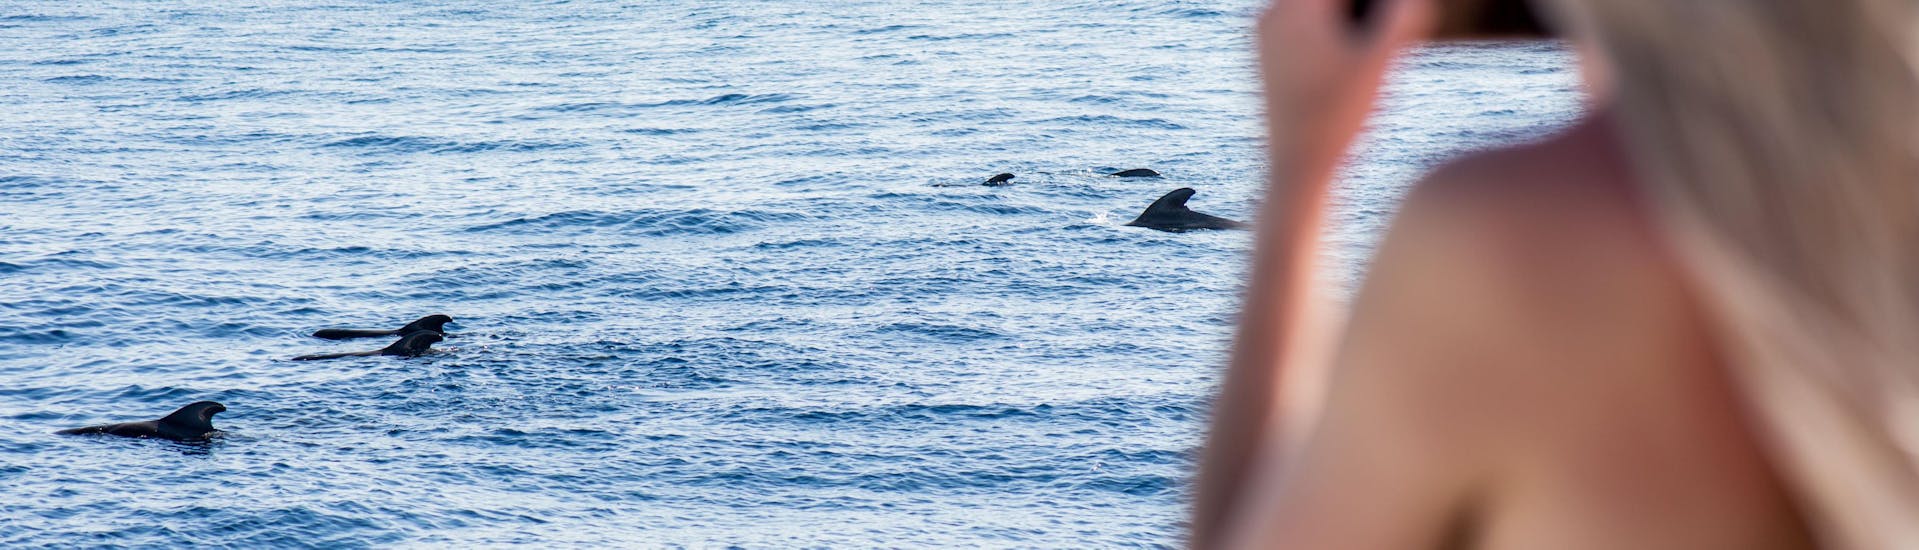 Paseo en barco avistamiento de delfines y ballenas en Costa Adeje.